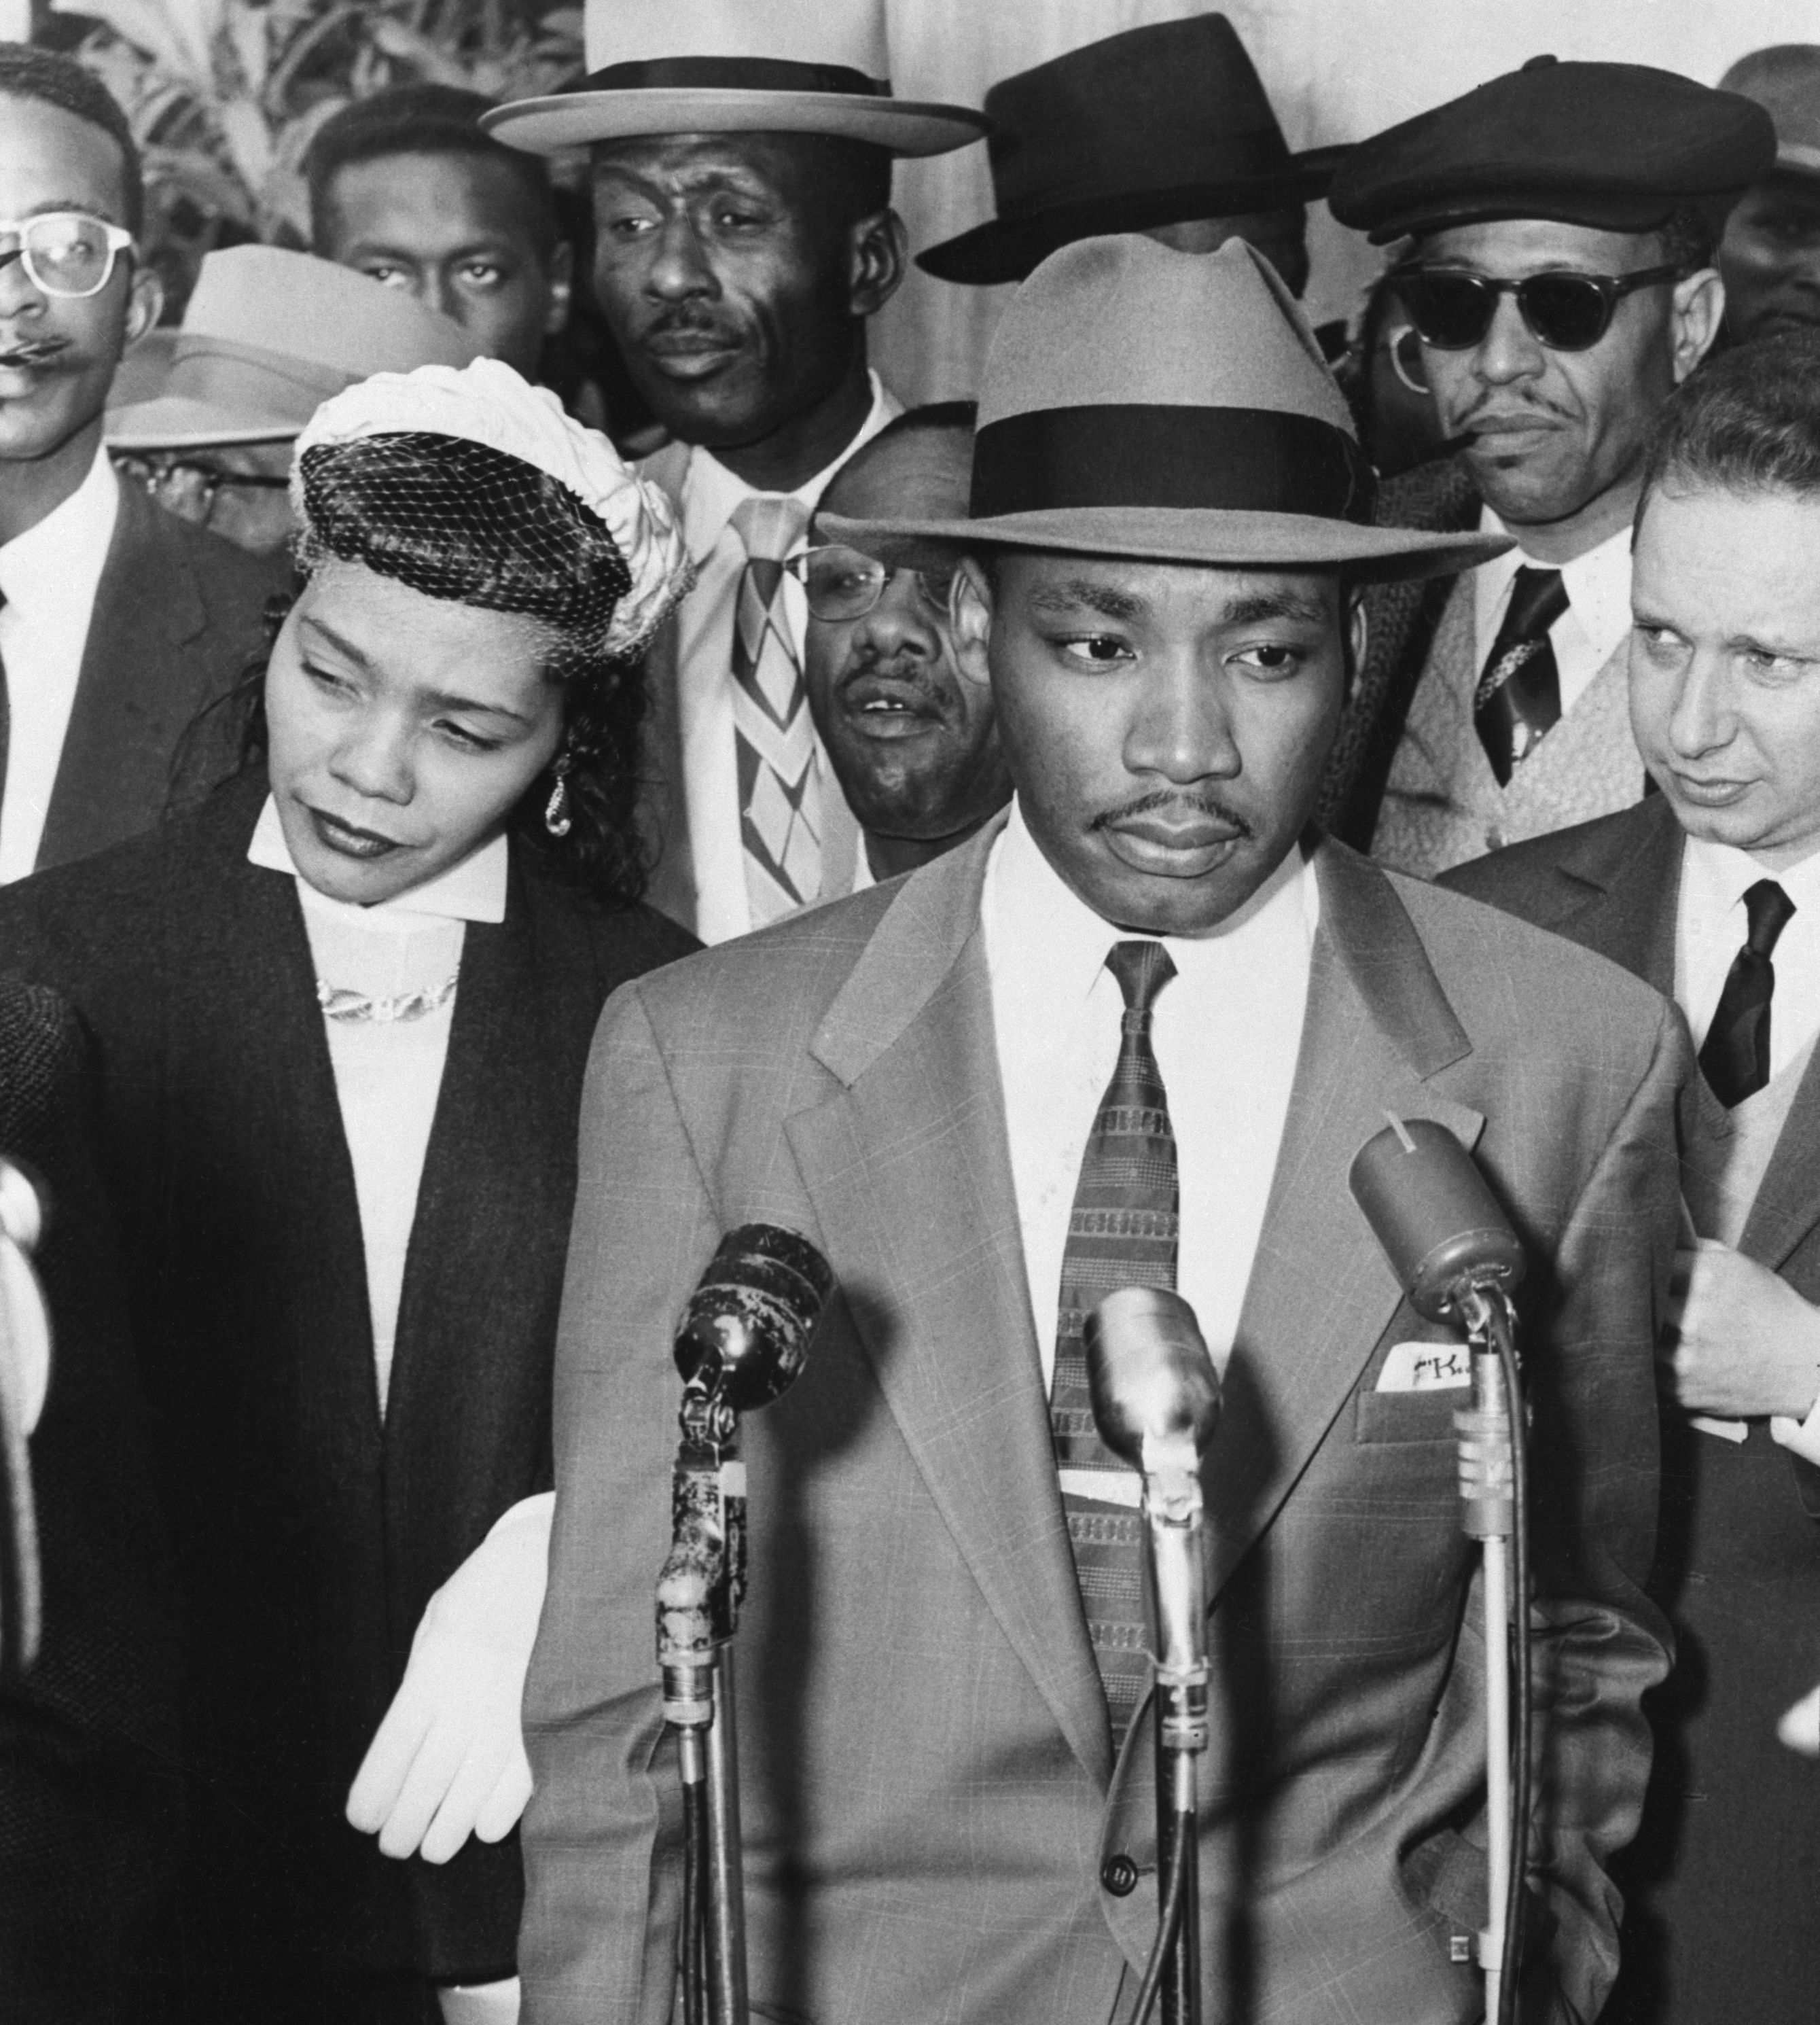 マーティン・ルーサー・キング・ジュニア牧師と公民権運動の歴史を深 